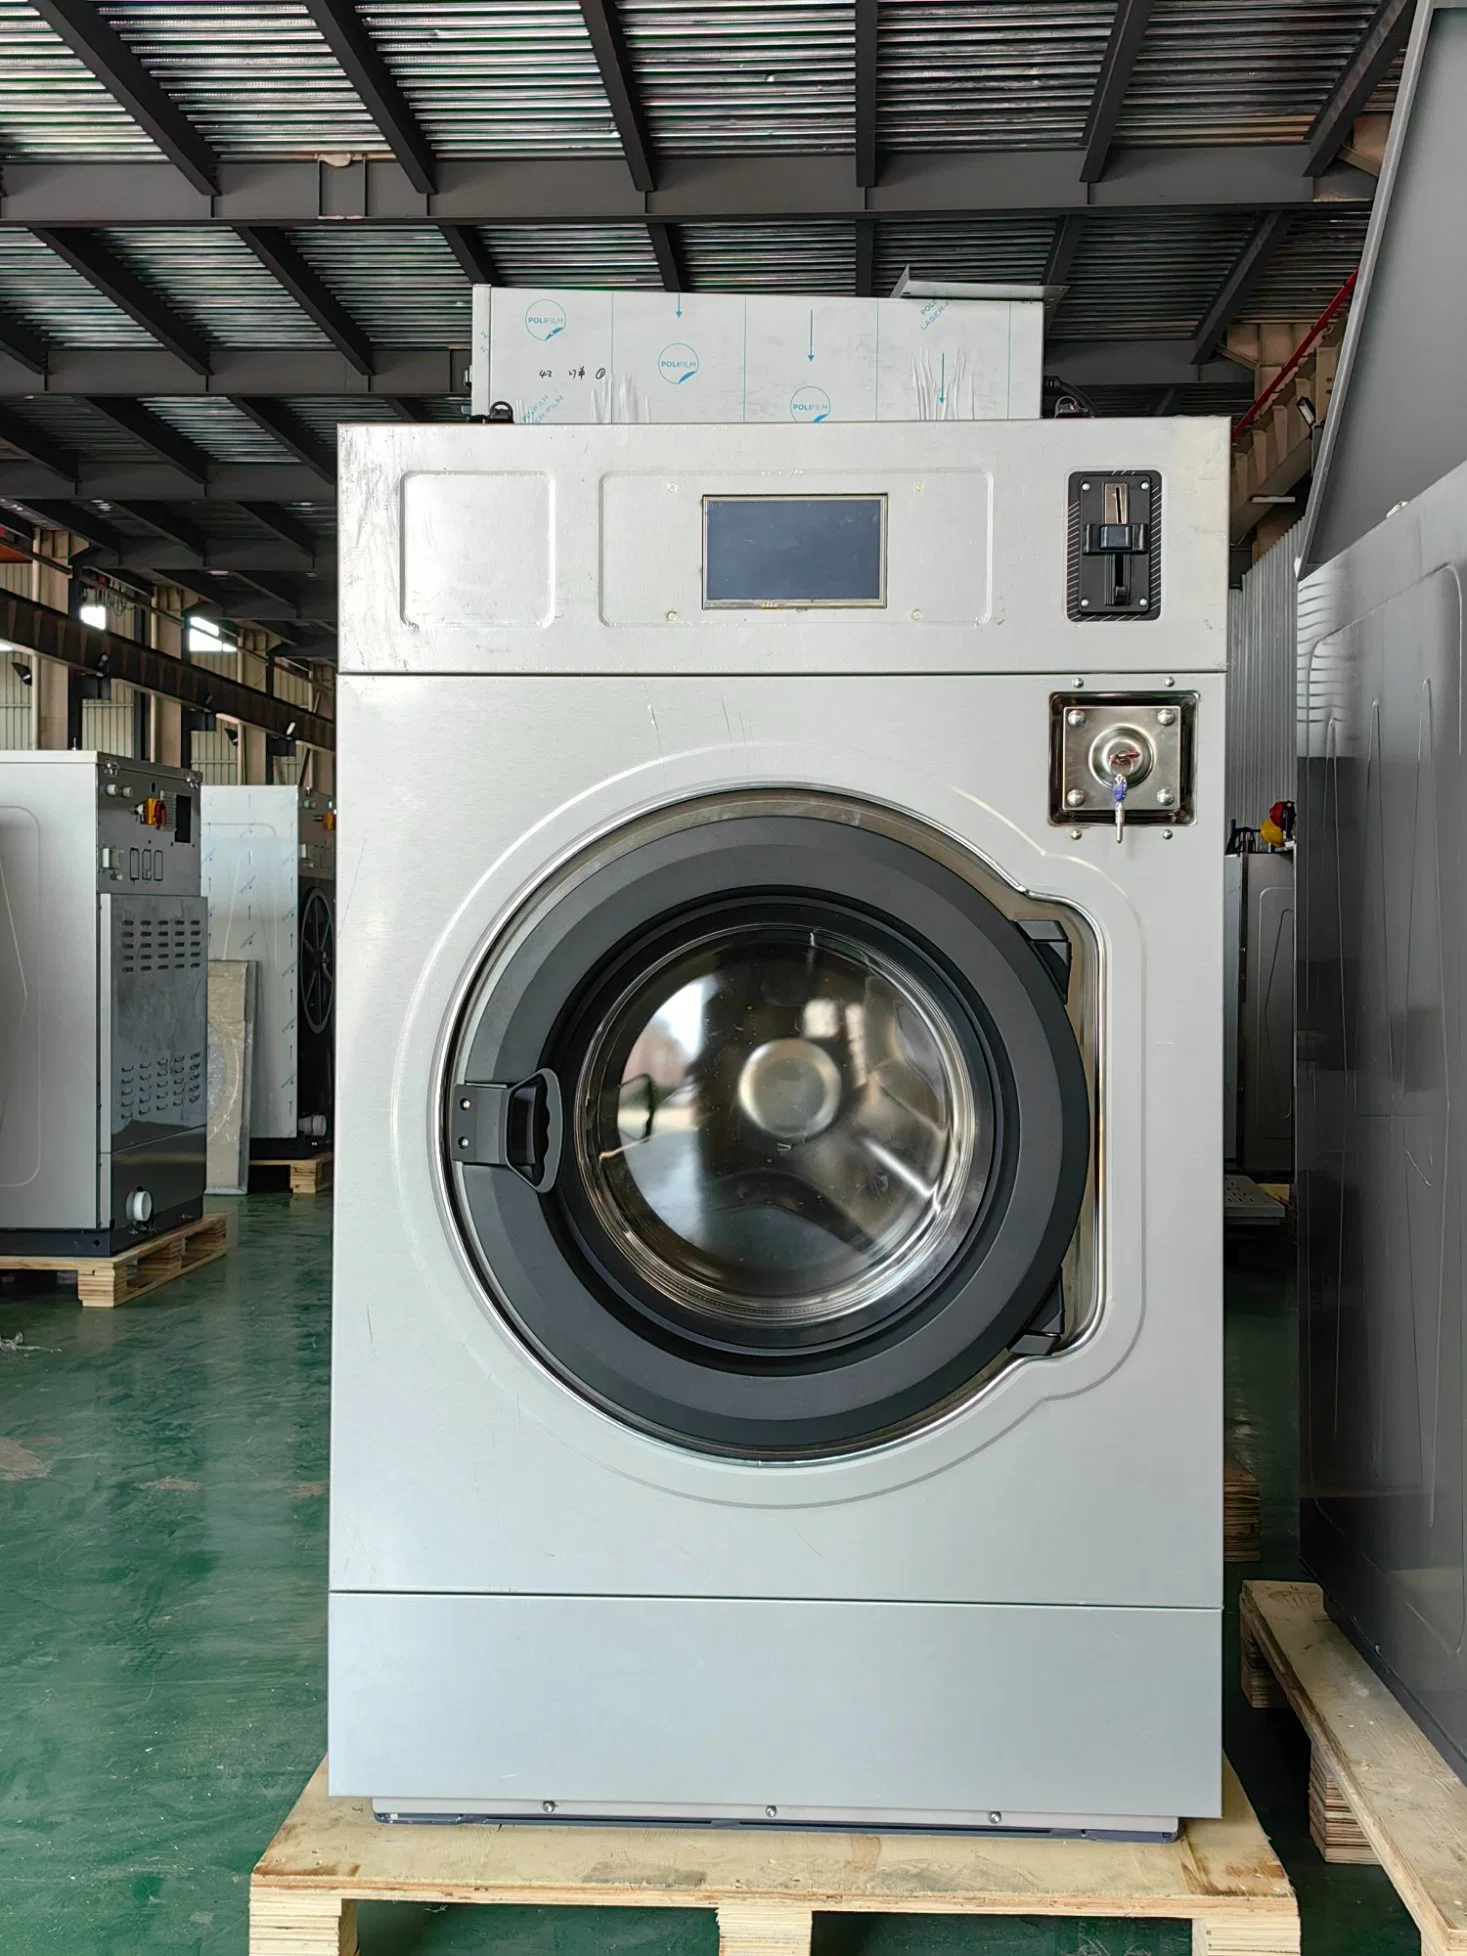 Автоматический коммерческий промышленный экстрактора с установкой на жесткий диск, работающий на Отель Hospital Sweater Factory Washing Machine